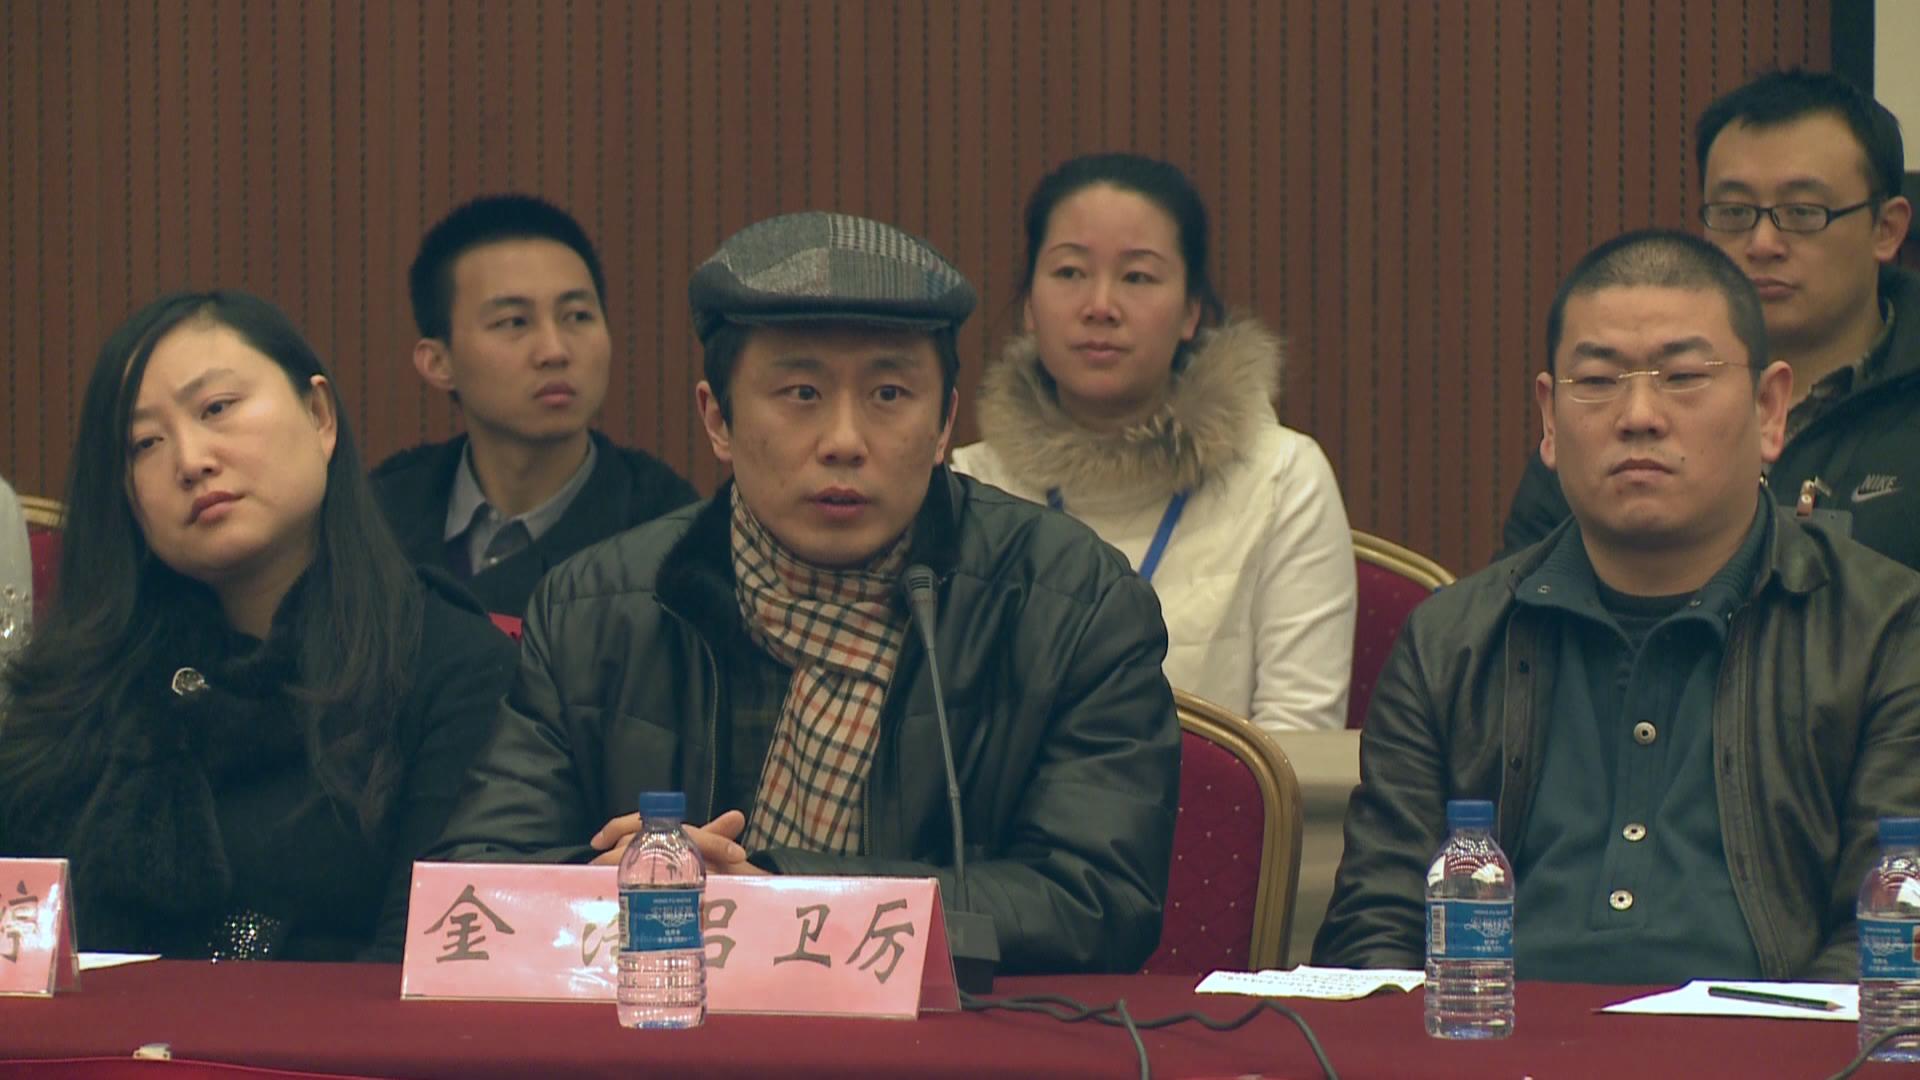 评委代表北京舞蹈学院研究生部金浩教授讲话